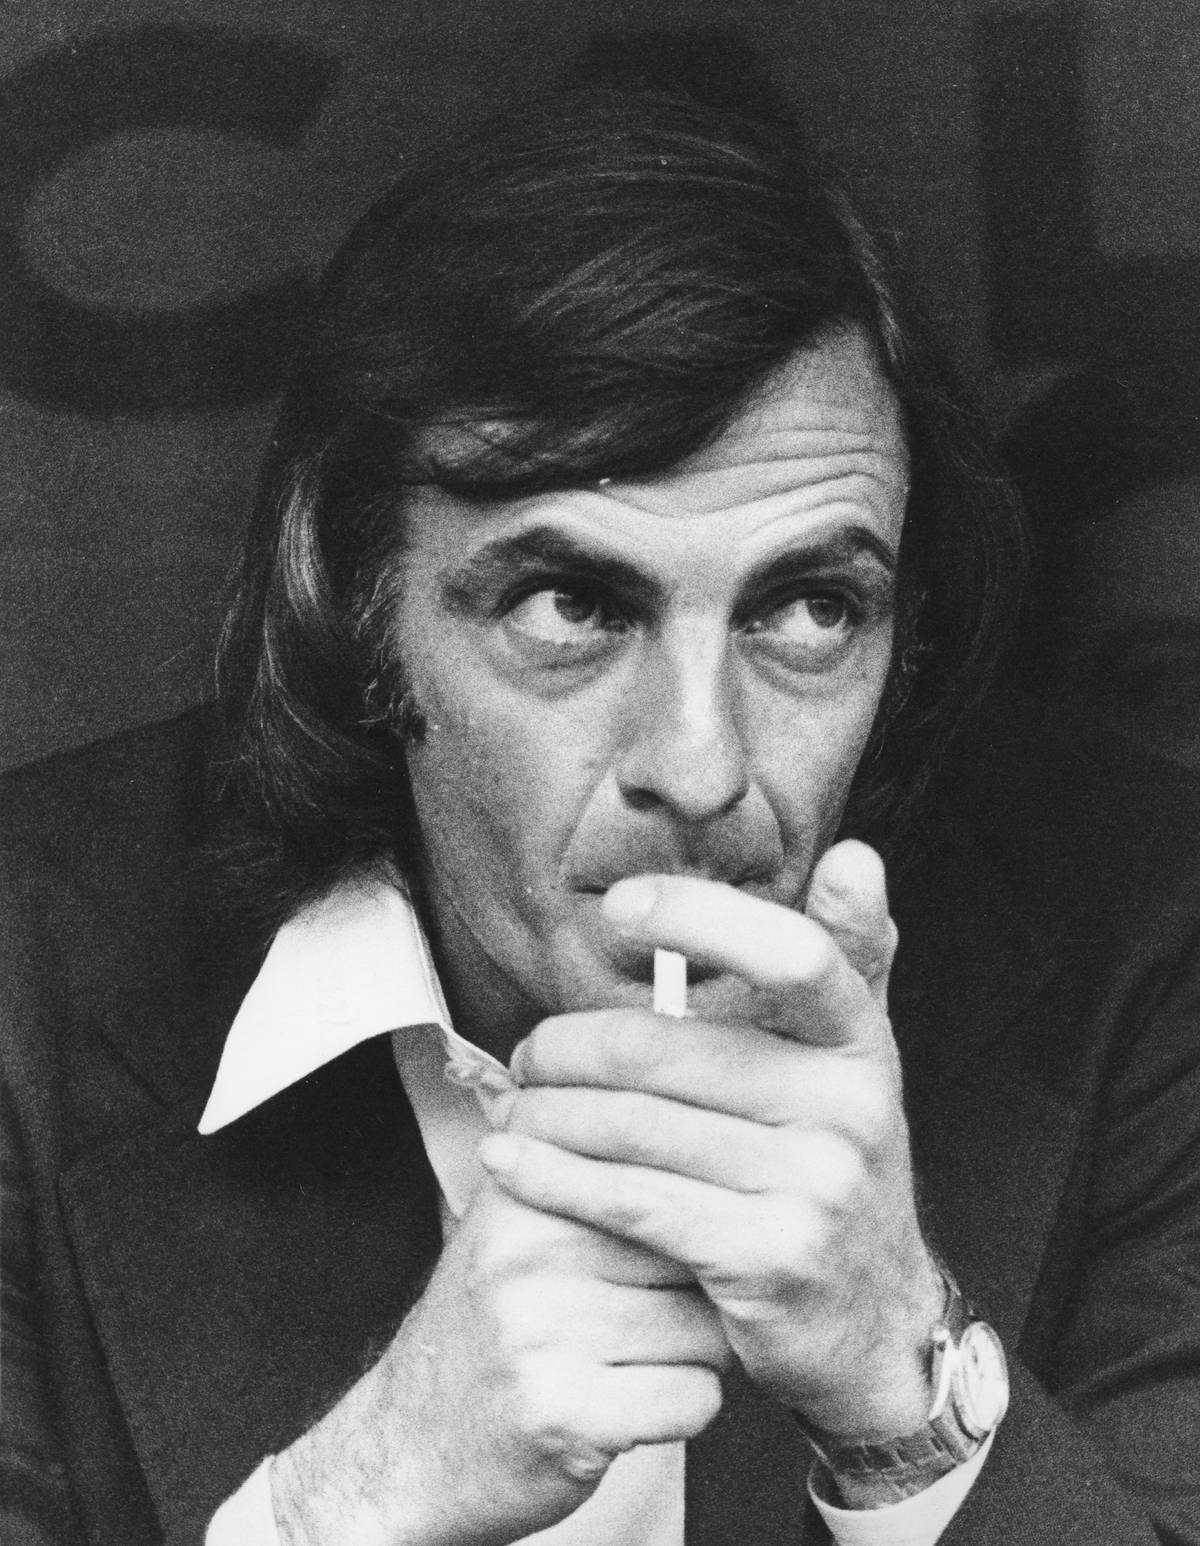 morreu césar luis menotti, o treinador campeão mundial pela argentina em 1978, que tratava o futebol como uma obra de arte